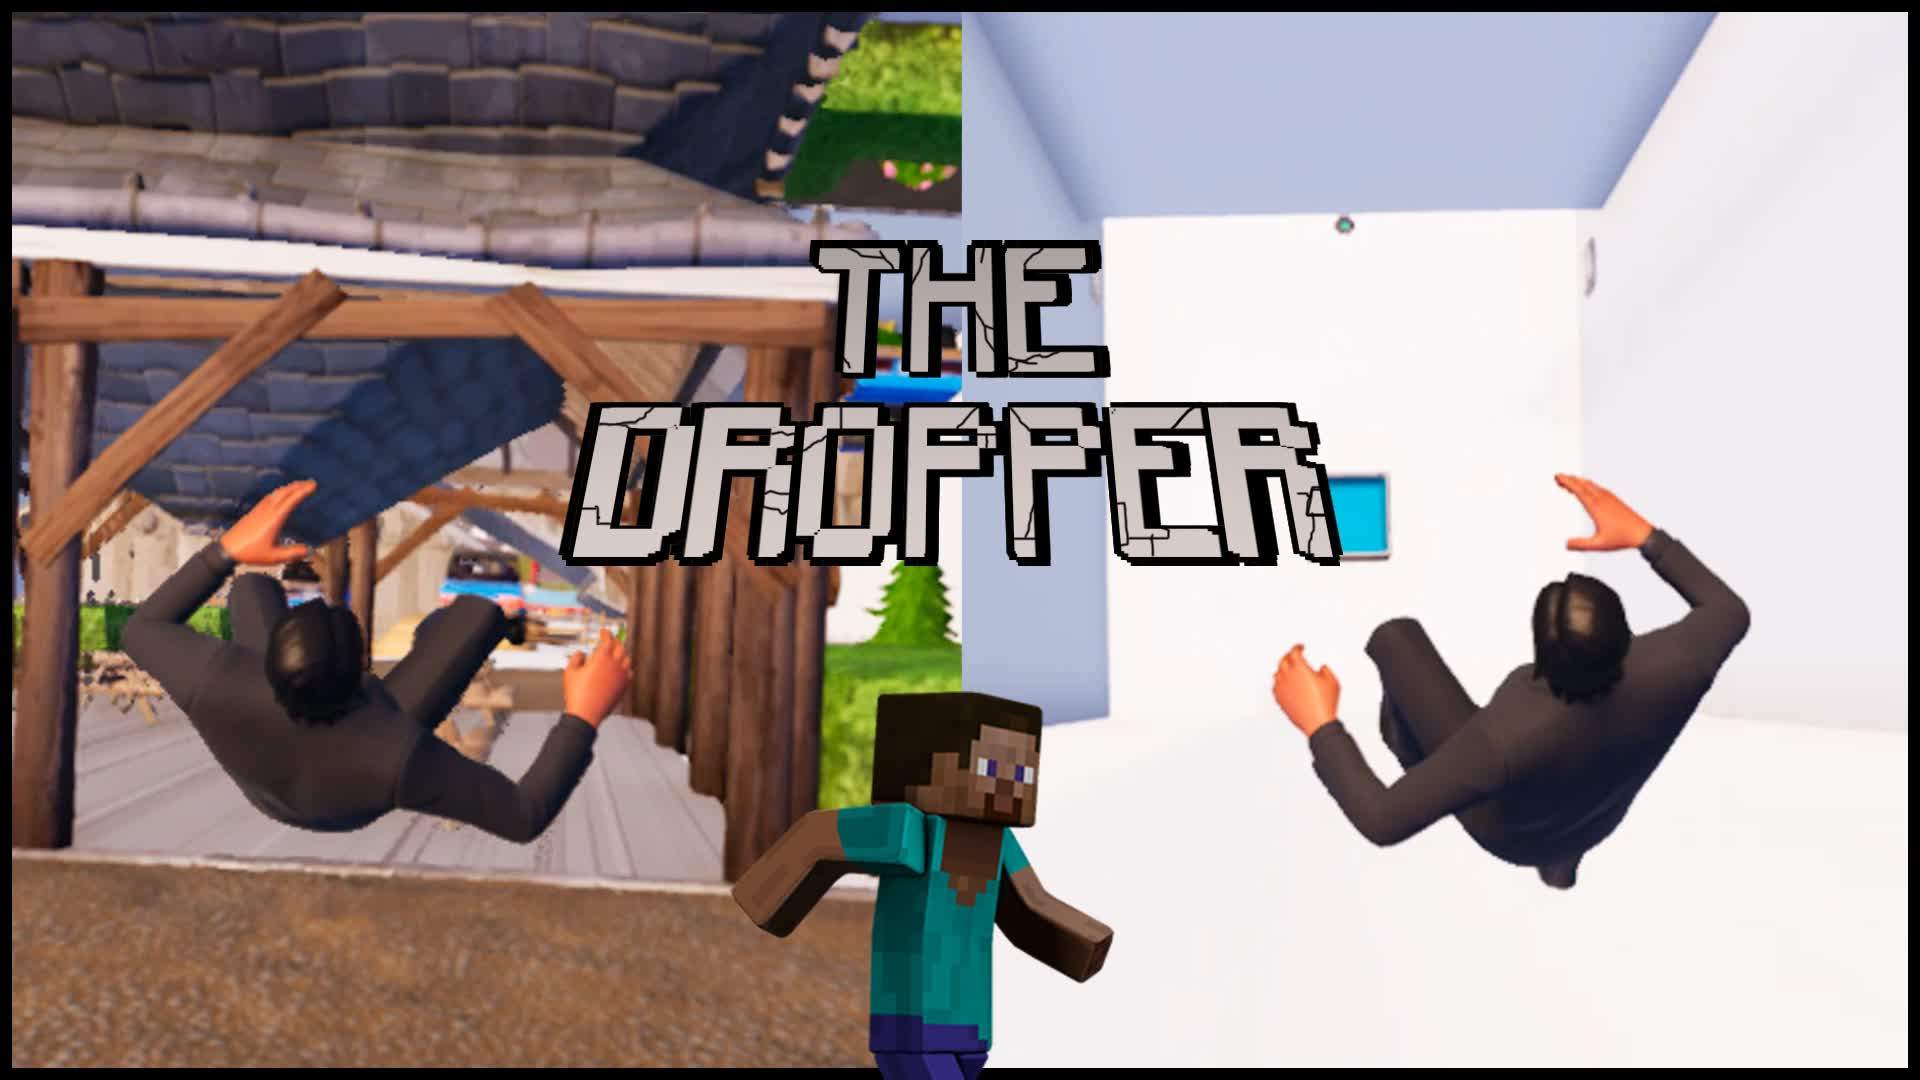 THE DROPPER FORTNITE!